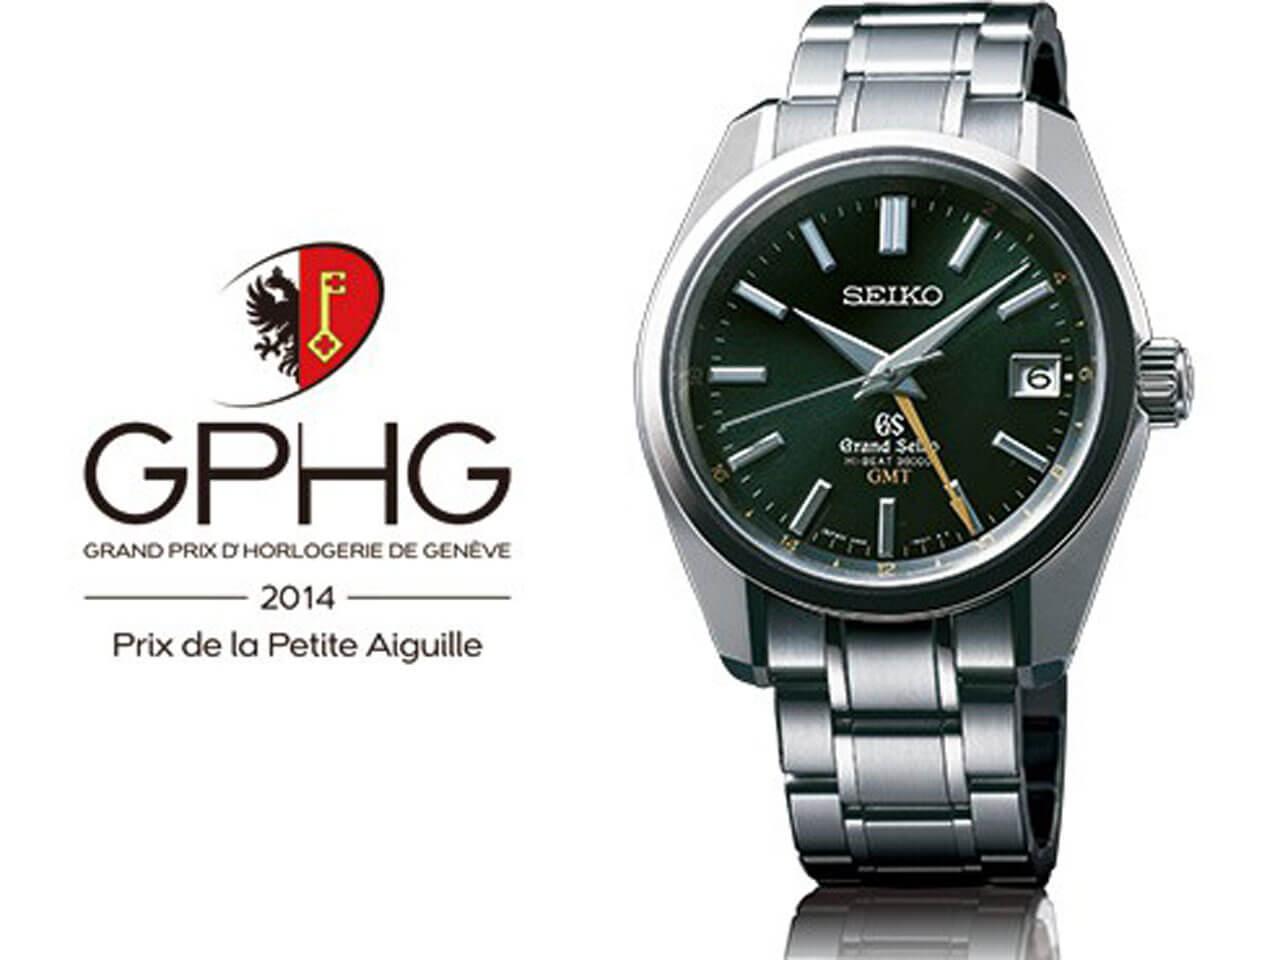 2014年メカニカルハイビートGMTキャリバーを搭載した限定モデルがGPHGで「Prix de la Petite Aiguille（小さな針賞）」を受賞